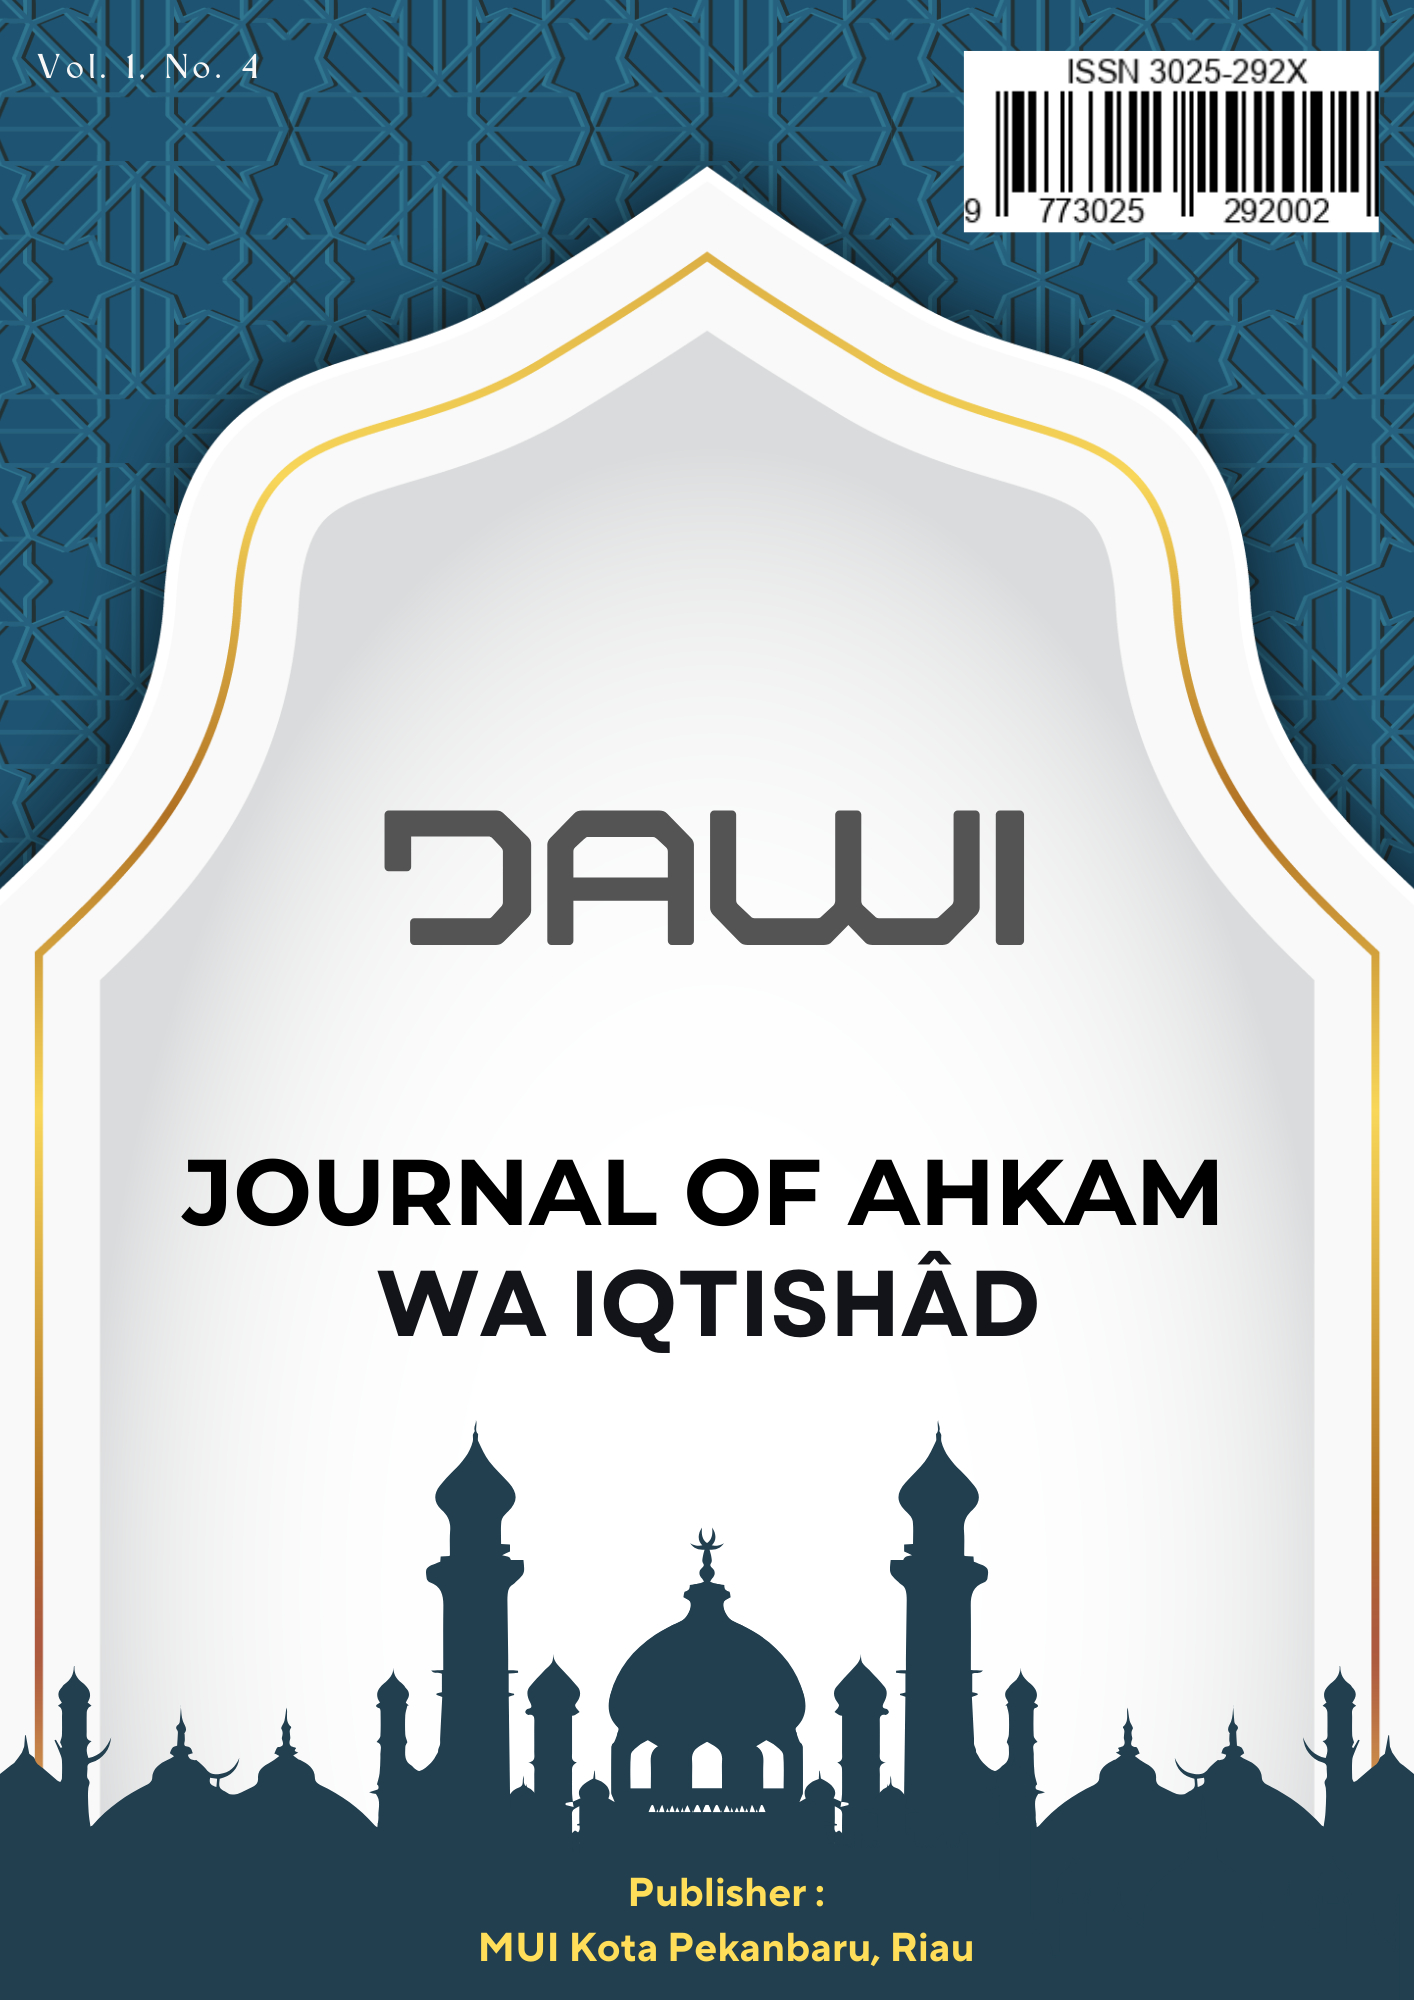 JAWI : Journal of Ahkam Wa Iqtishad